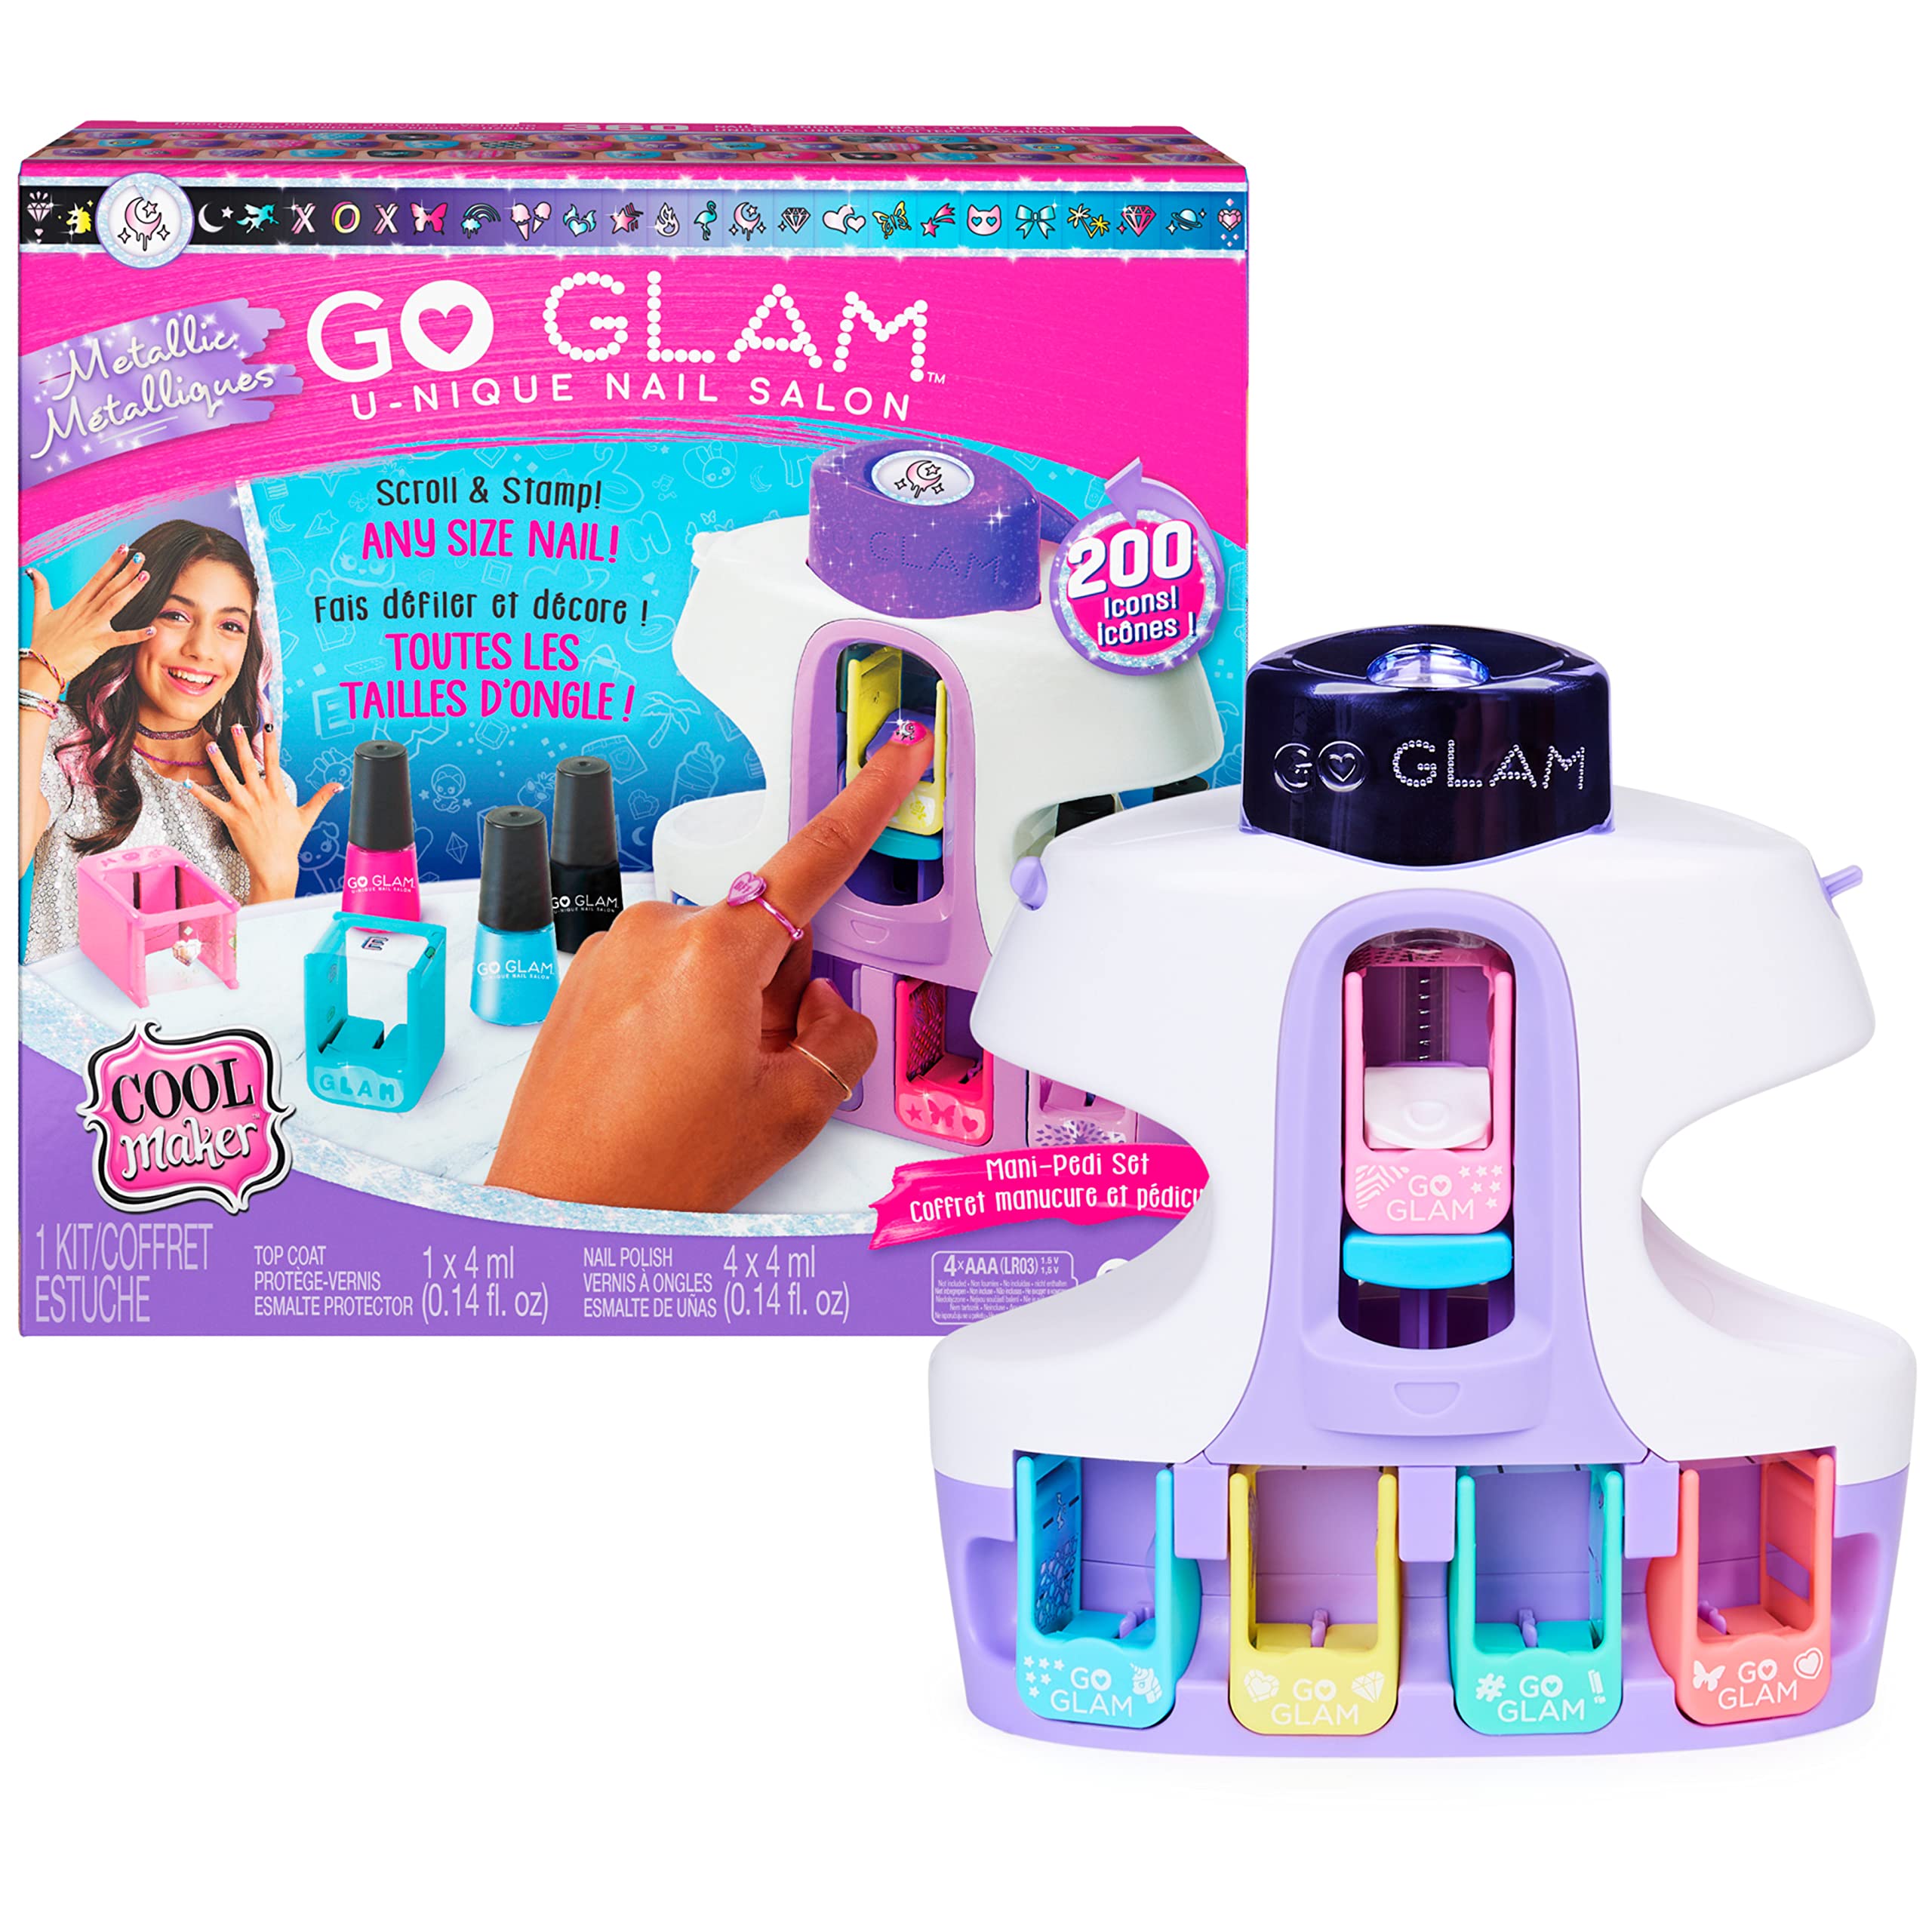 Cool Maker - Go Glam Nail Unique Salon - Machine à ongles avec